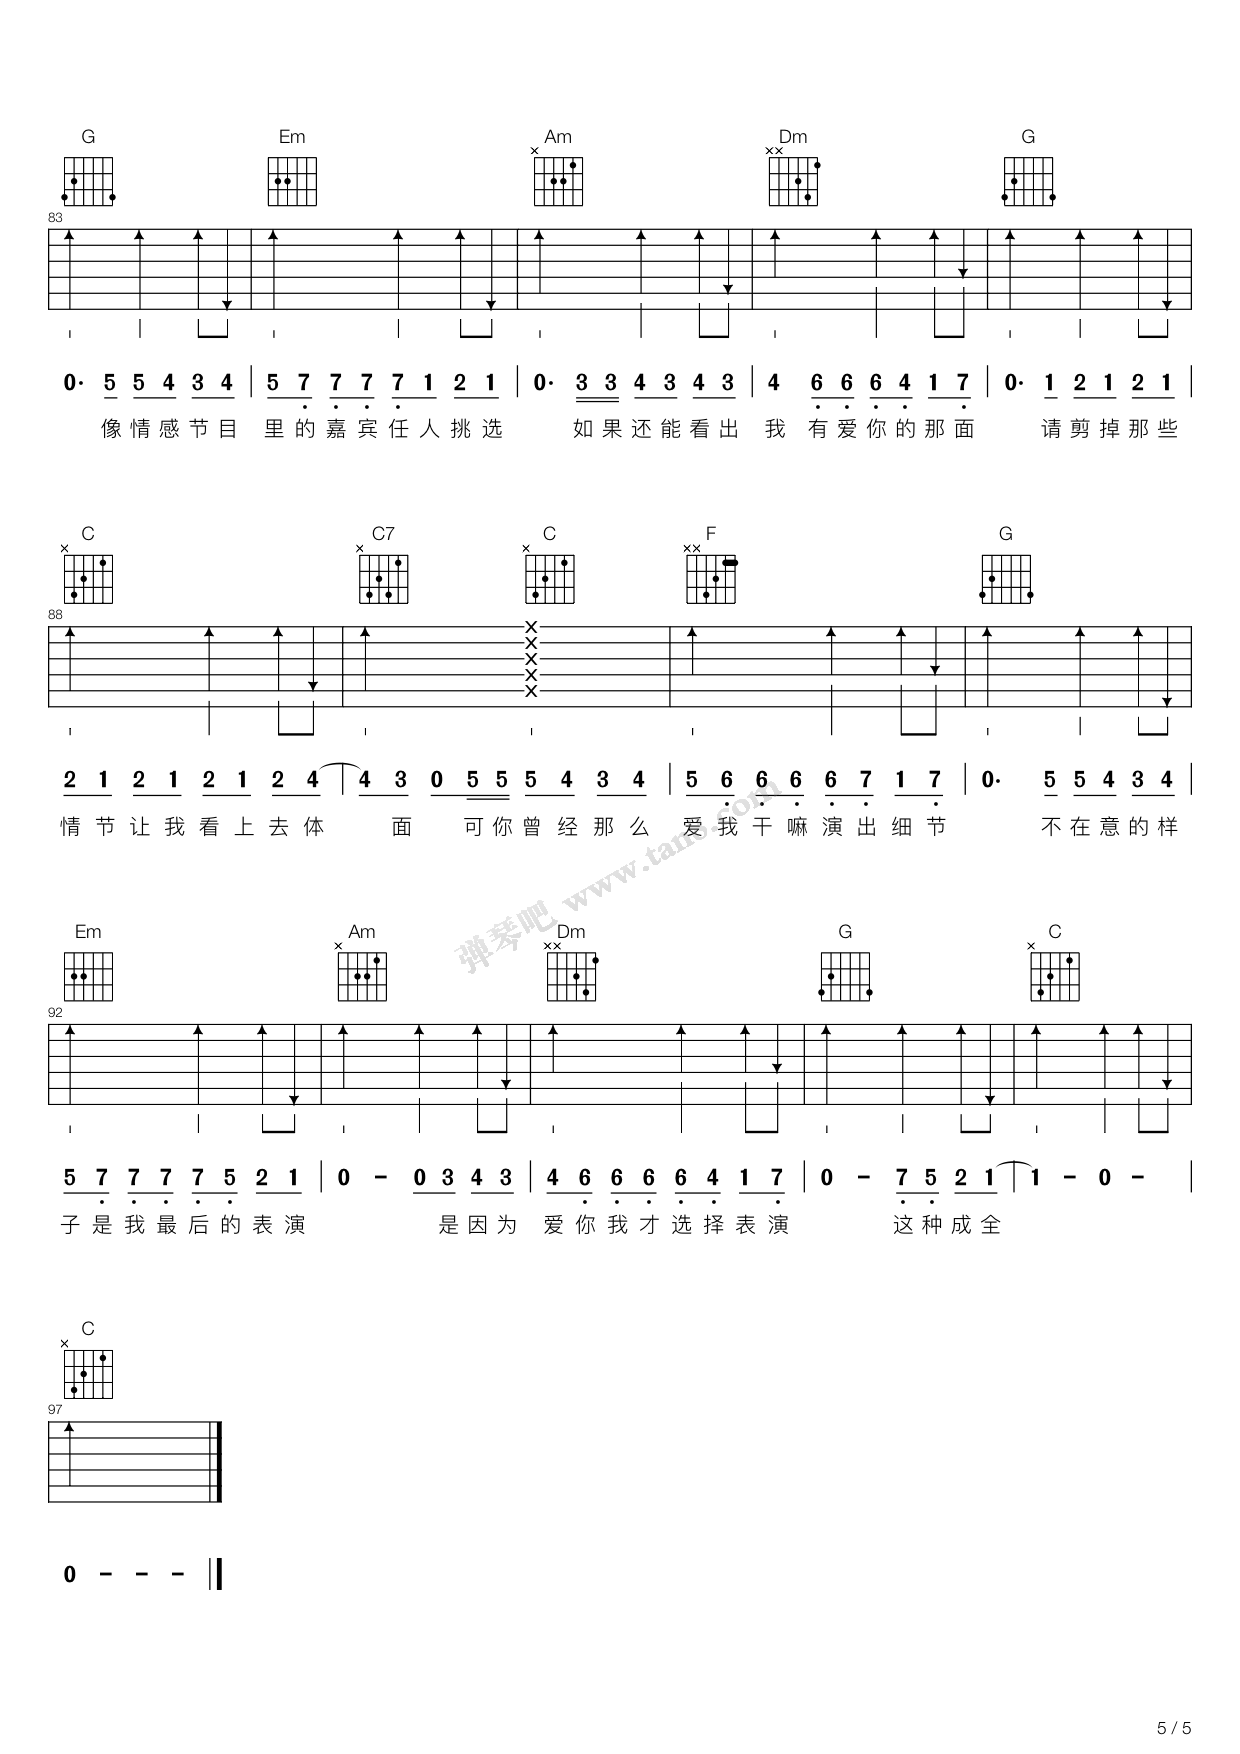 无数-薛之谦五线谱预览5-钢琴谱文件（五线谱、双手简谱、数字谱、Midi、PDF）免费下载